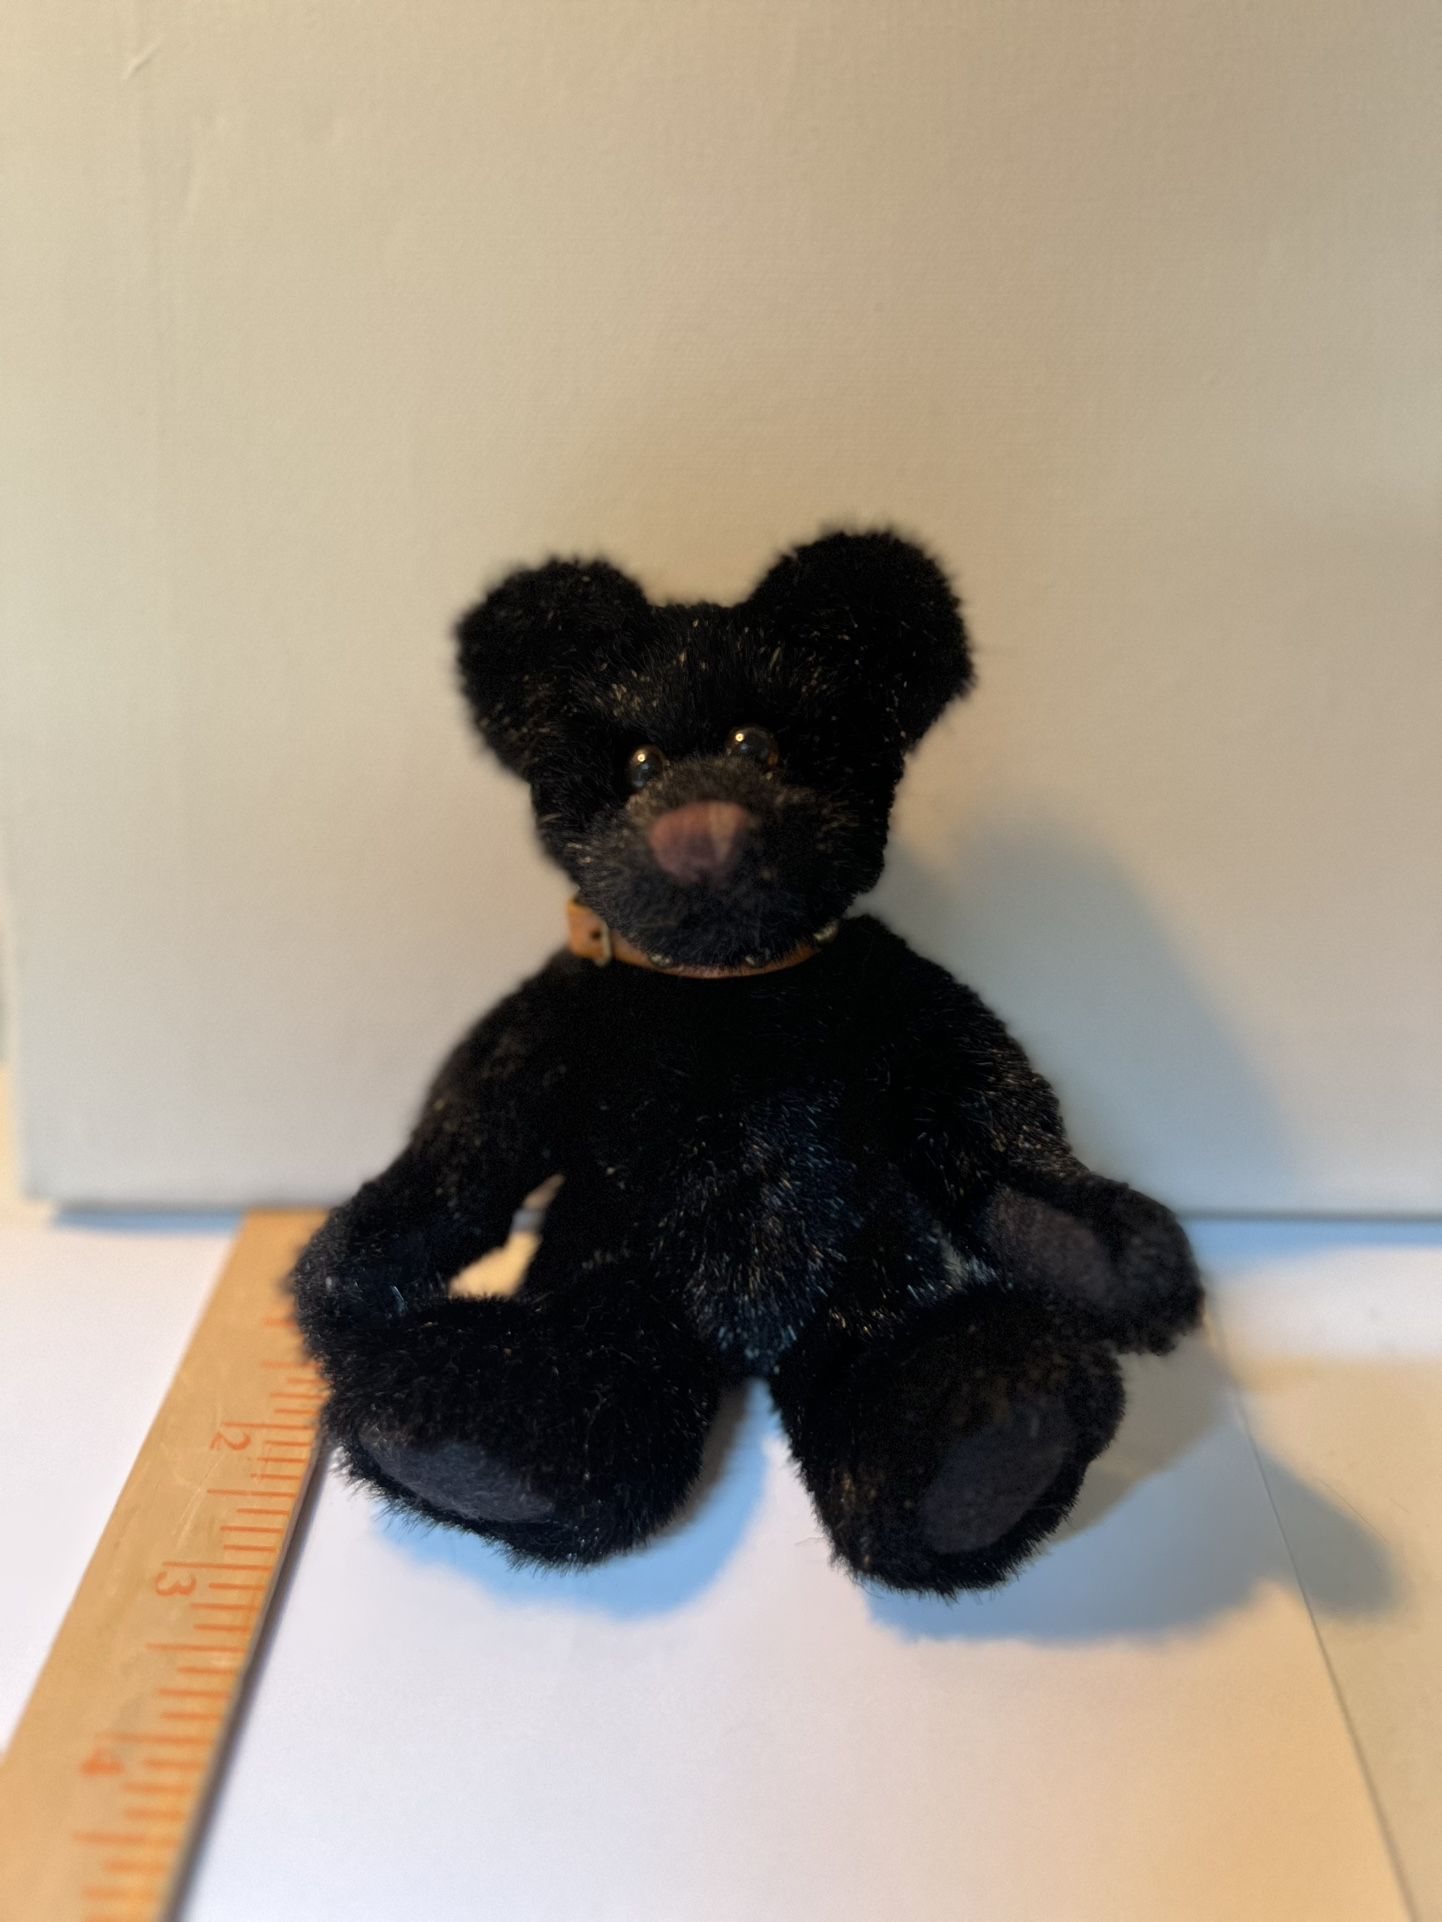 Vintage Bear 1996 Boyds Bear Teddy Blackstone Studded Collar Jointed 7”